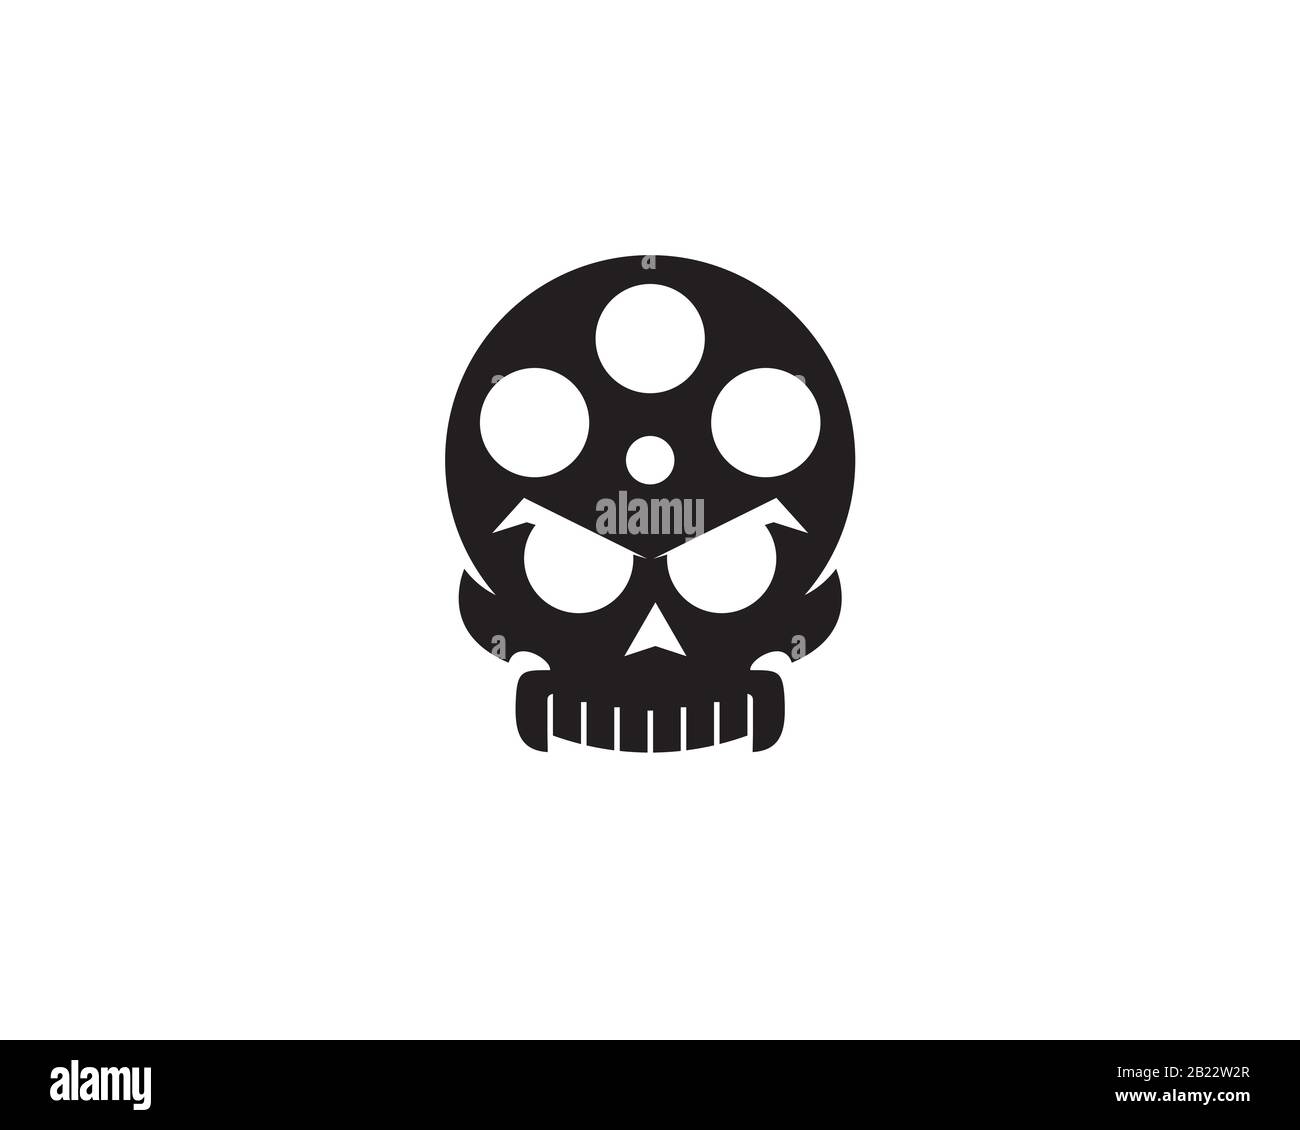 bobine de film avec les grands yeux comme un crâne étranger tête montrant le logo du film d'horreur Illustration de Vecteur